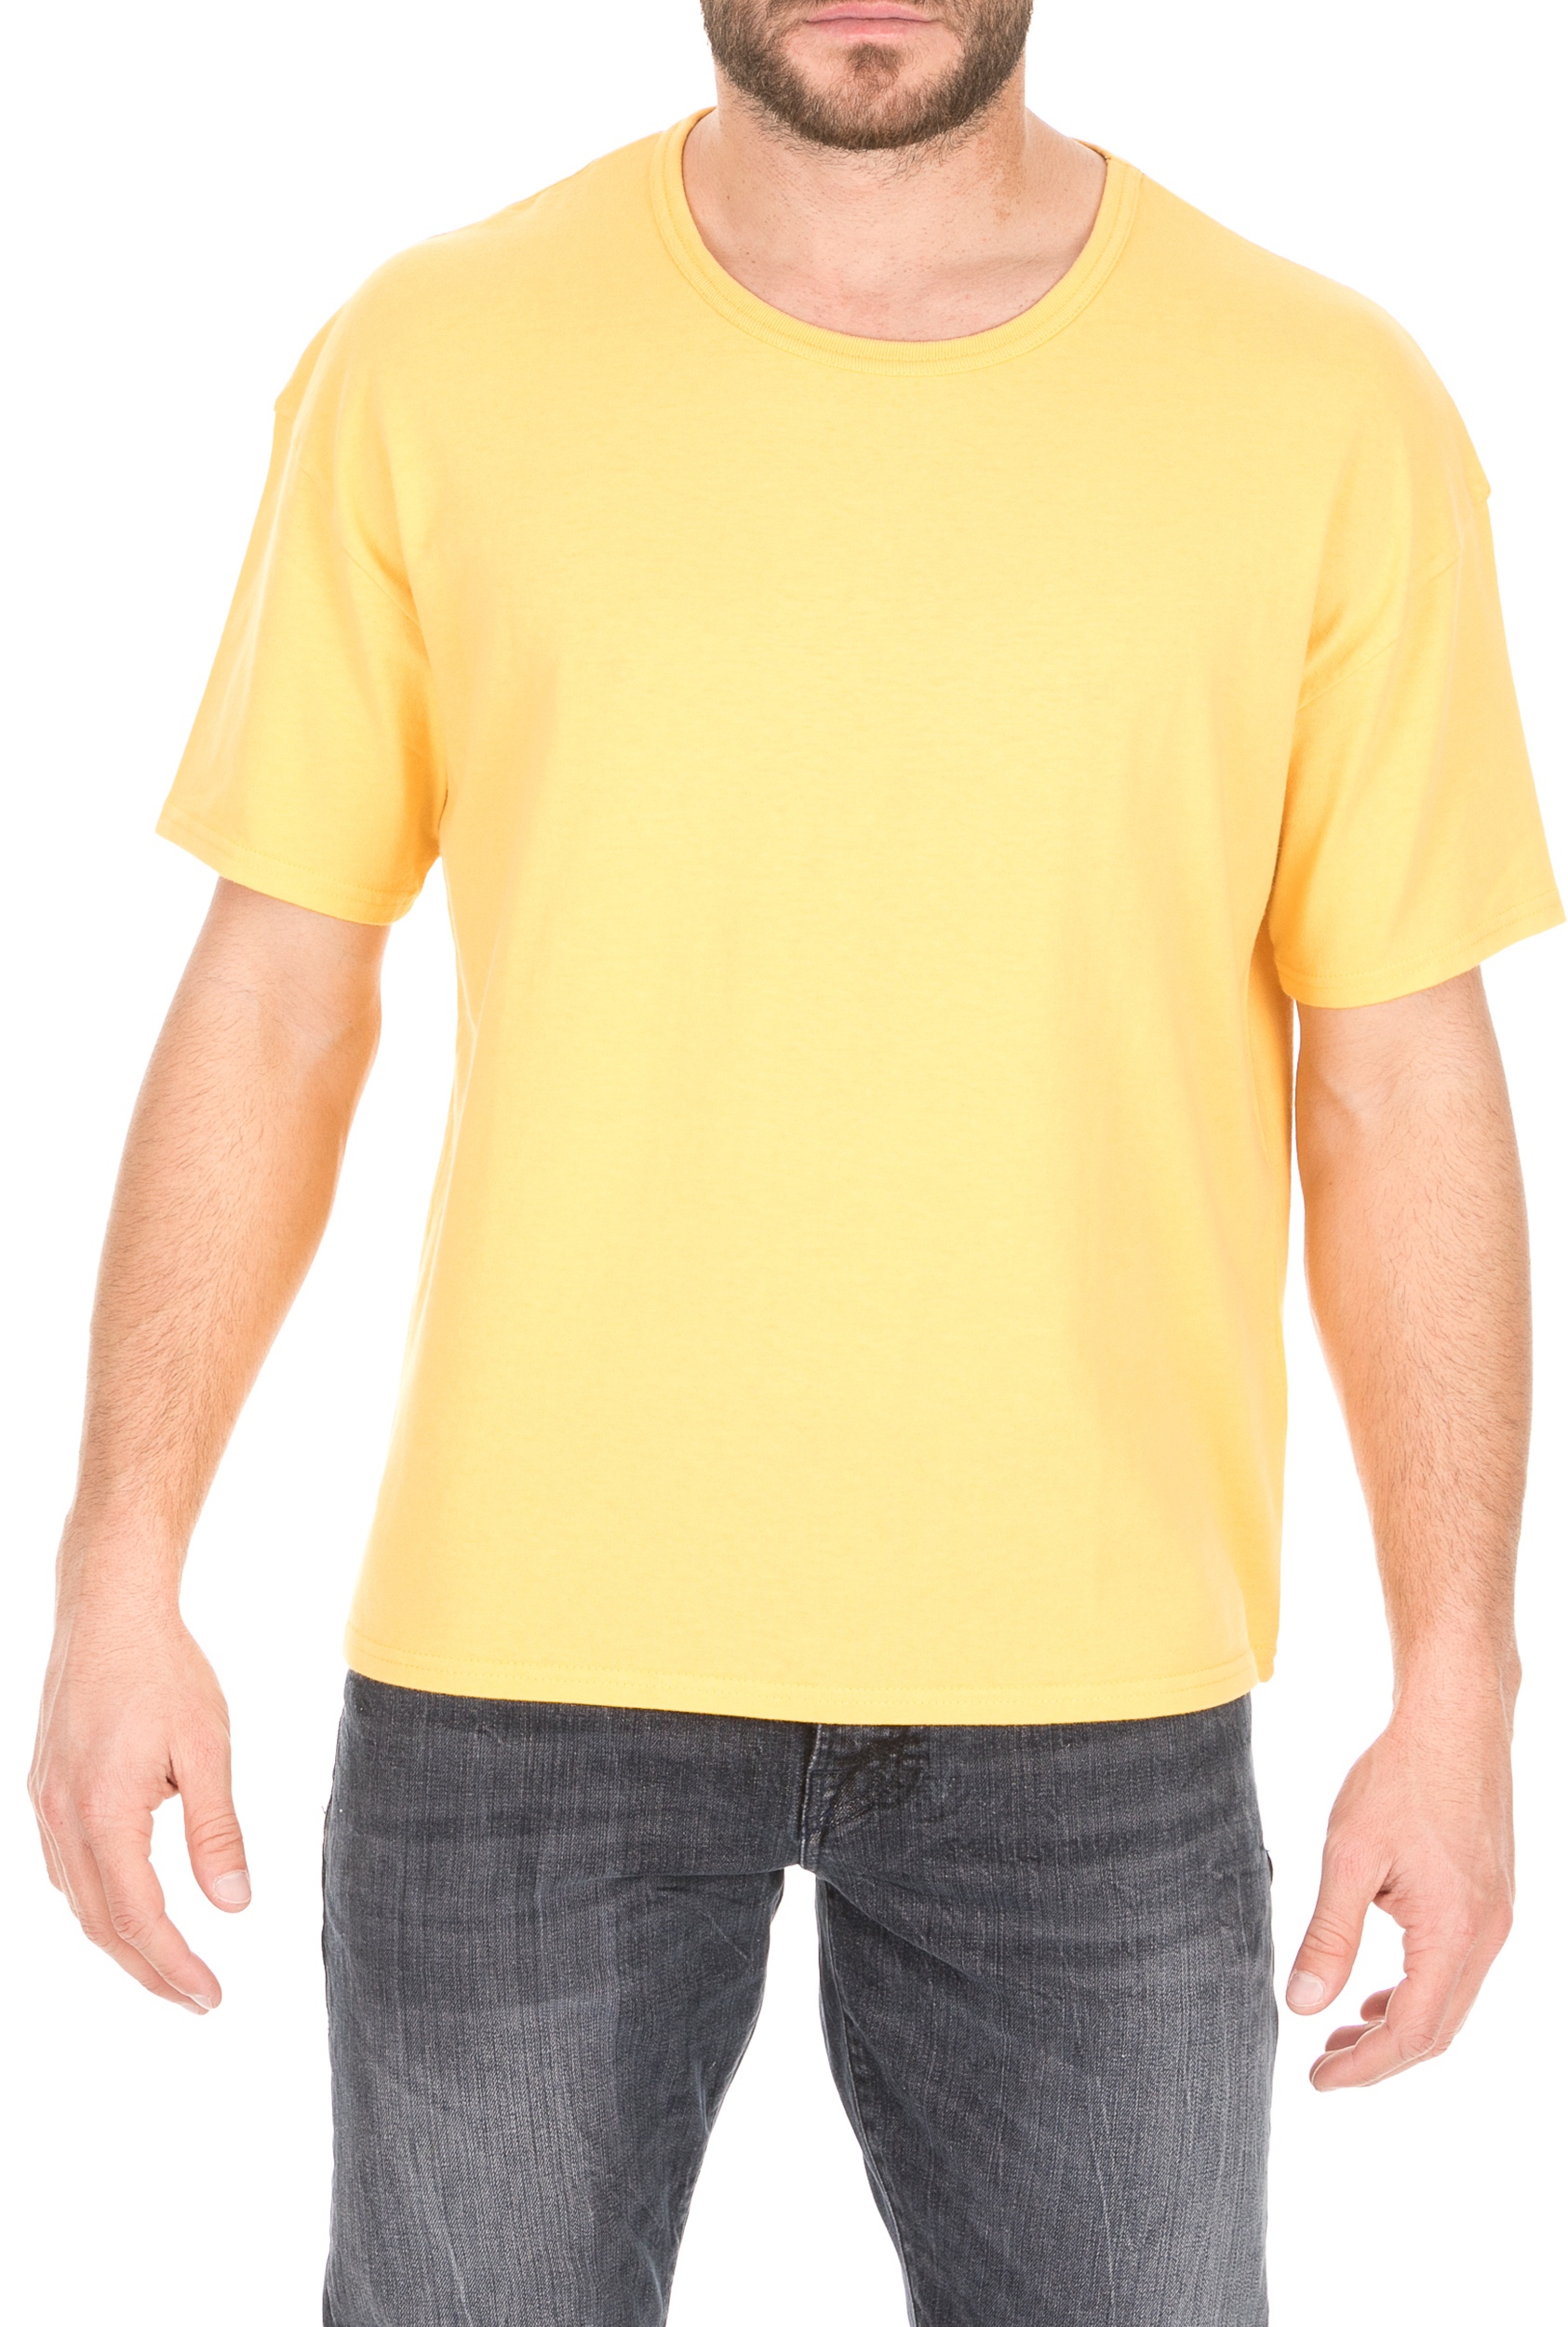 Ανδρικά/Ρούχα/Μπλούζες/Κοντομάνικες AMERICAN VINTAGE - Ανδρικό t-shirt AMERICAN VINTAGE πορτοκαλί